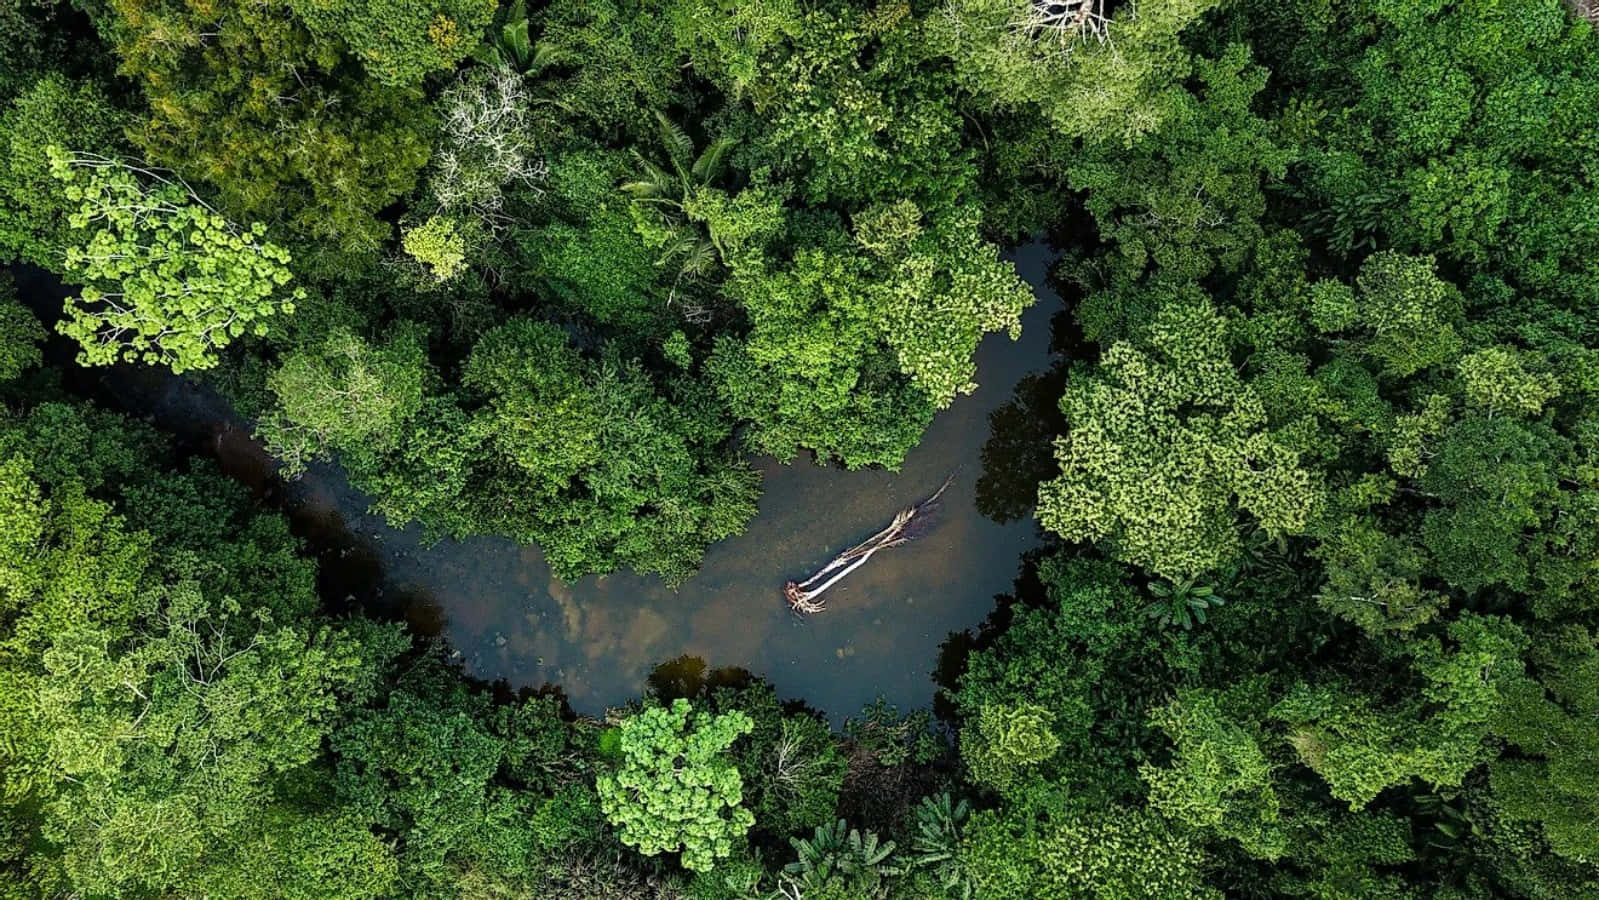 A Journey Through a Beautiful Rainforest